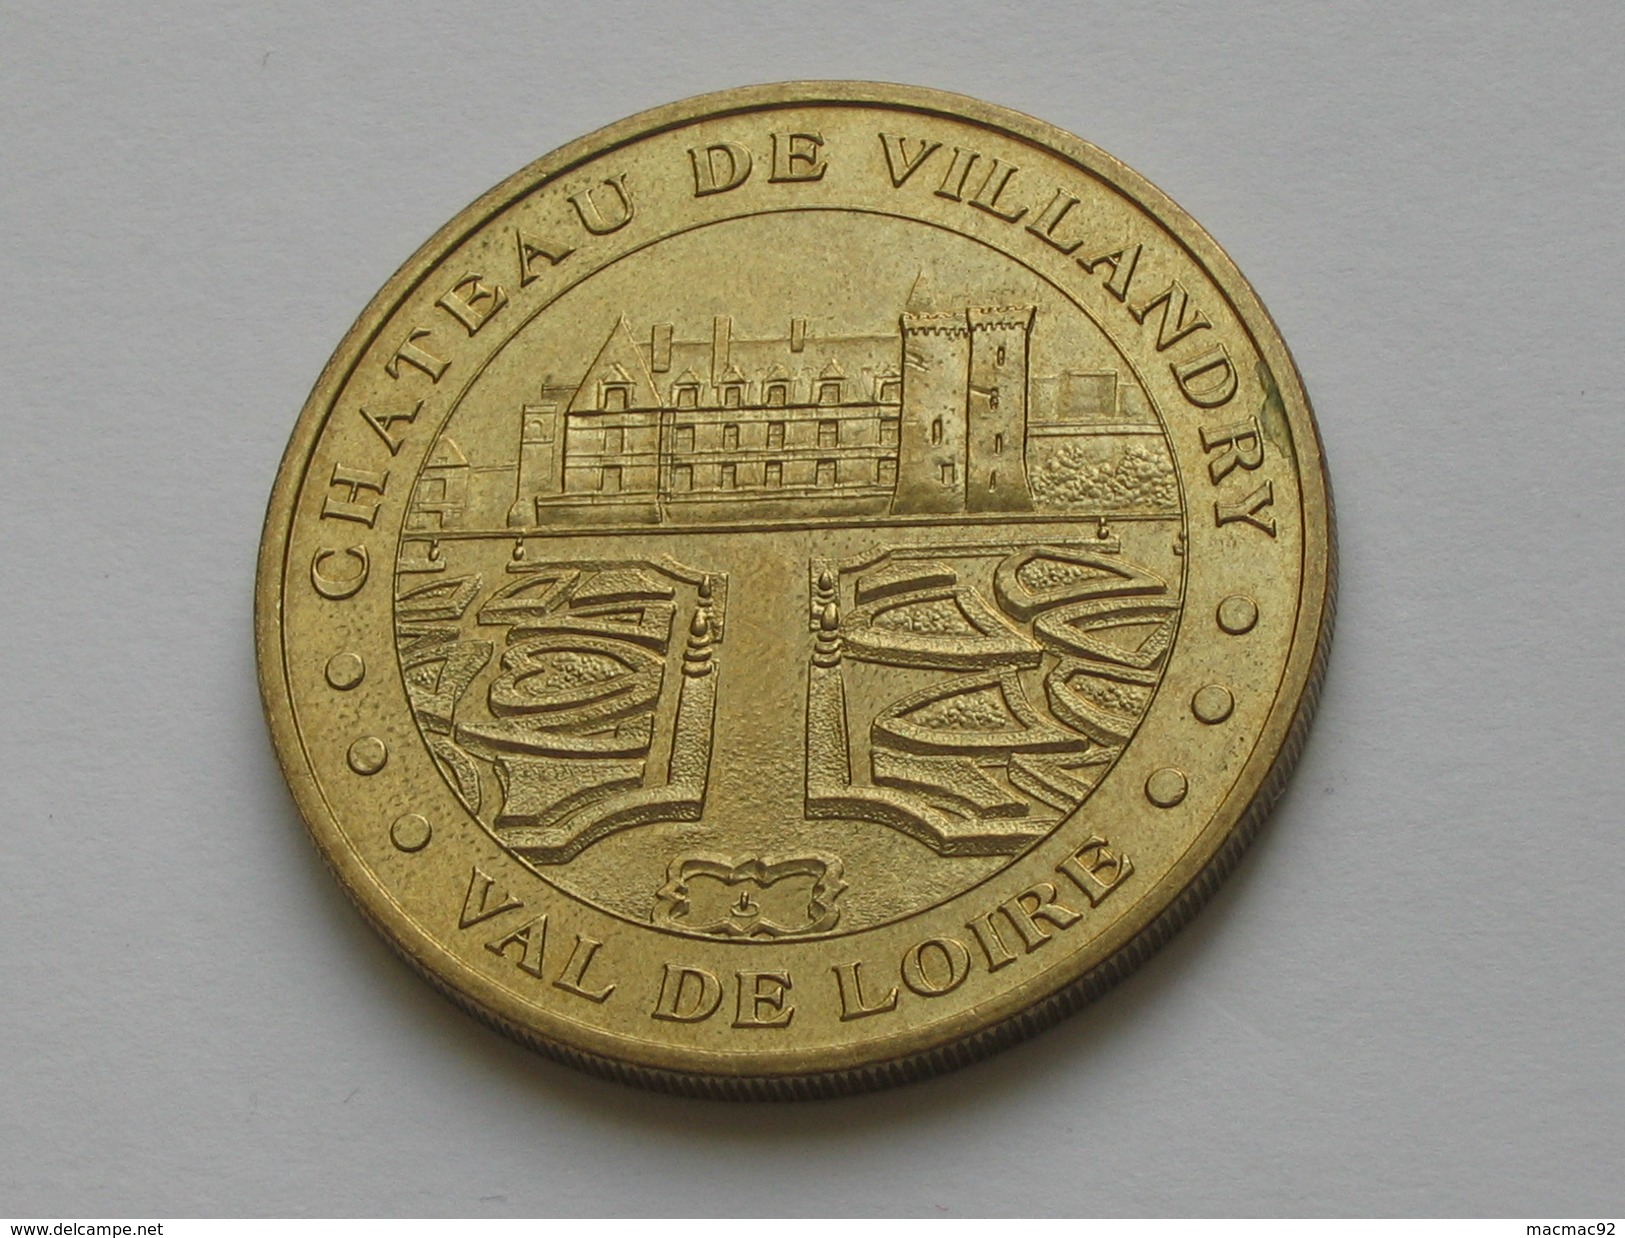 Monnaie De Paris  - CHATEAU DE VILLANDRY 2004 - VAL DE LOIRE  **** EN ACHAT IMMEDIAT  **** - 2004